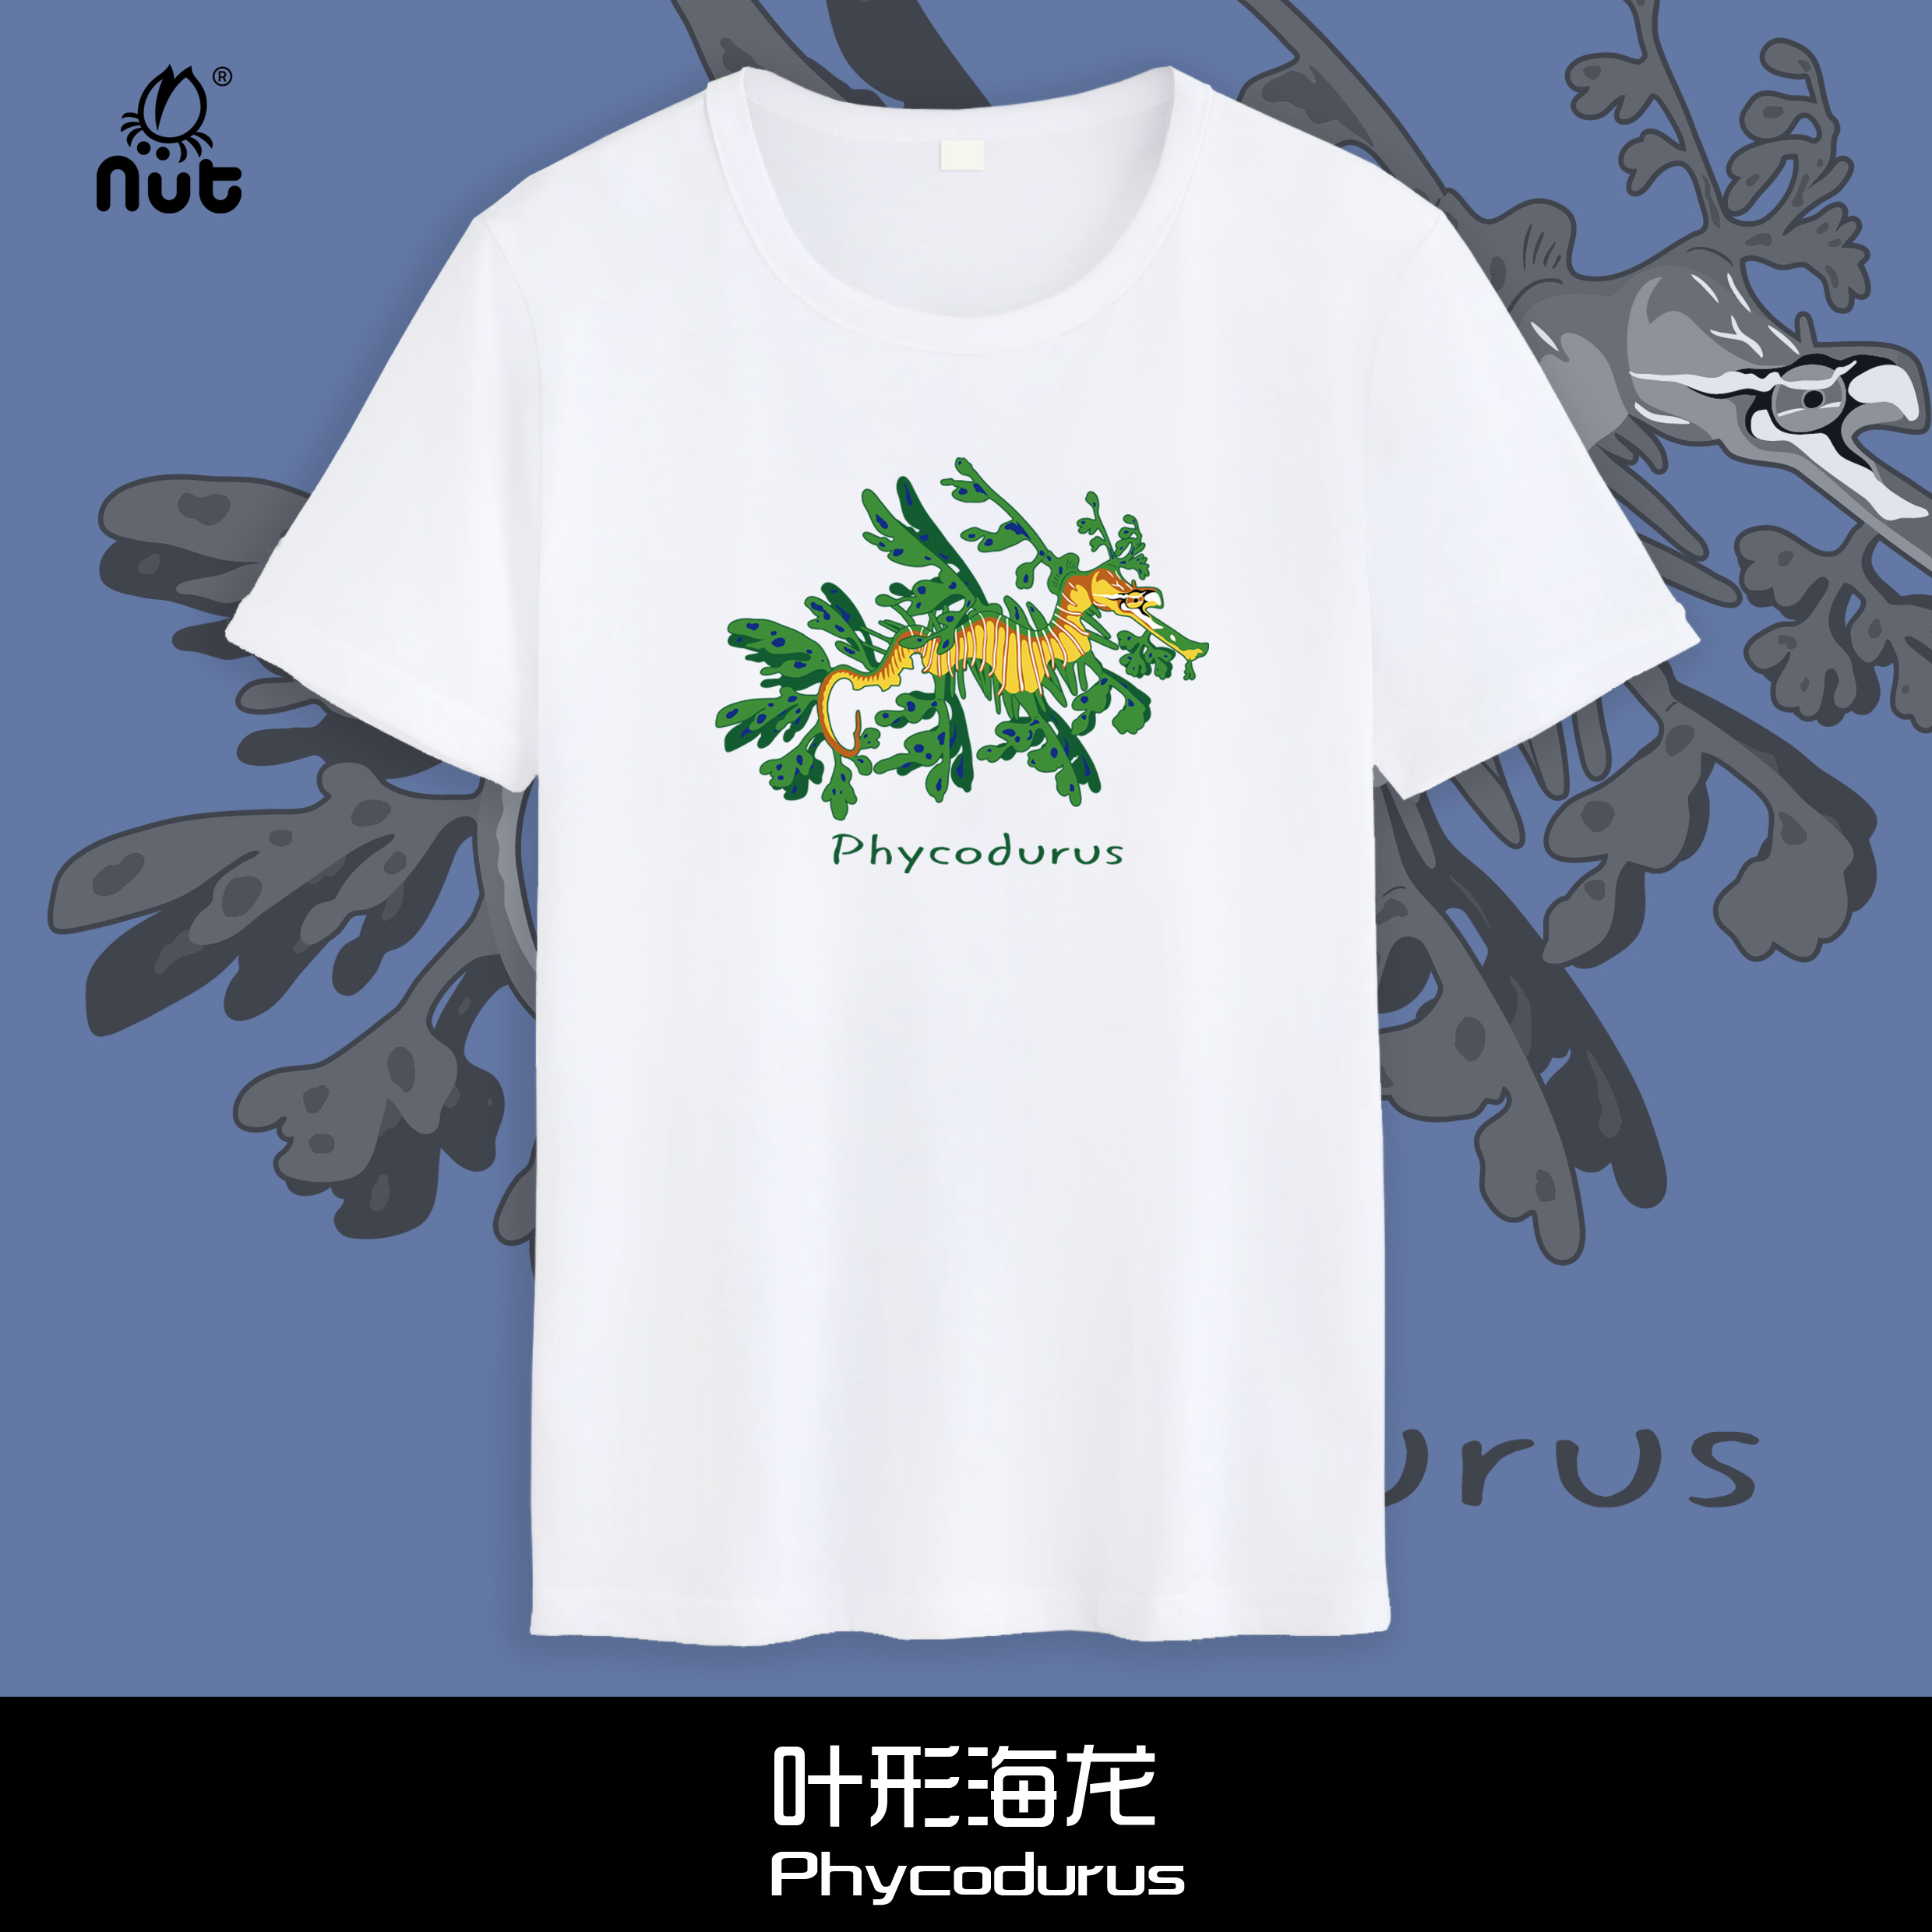 叶形海龙T恤原创设计海水图案个性短袖自然博物文创自然科普nut